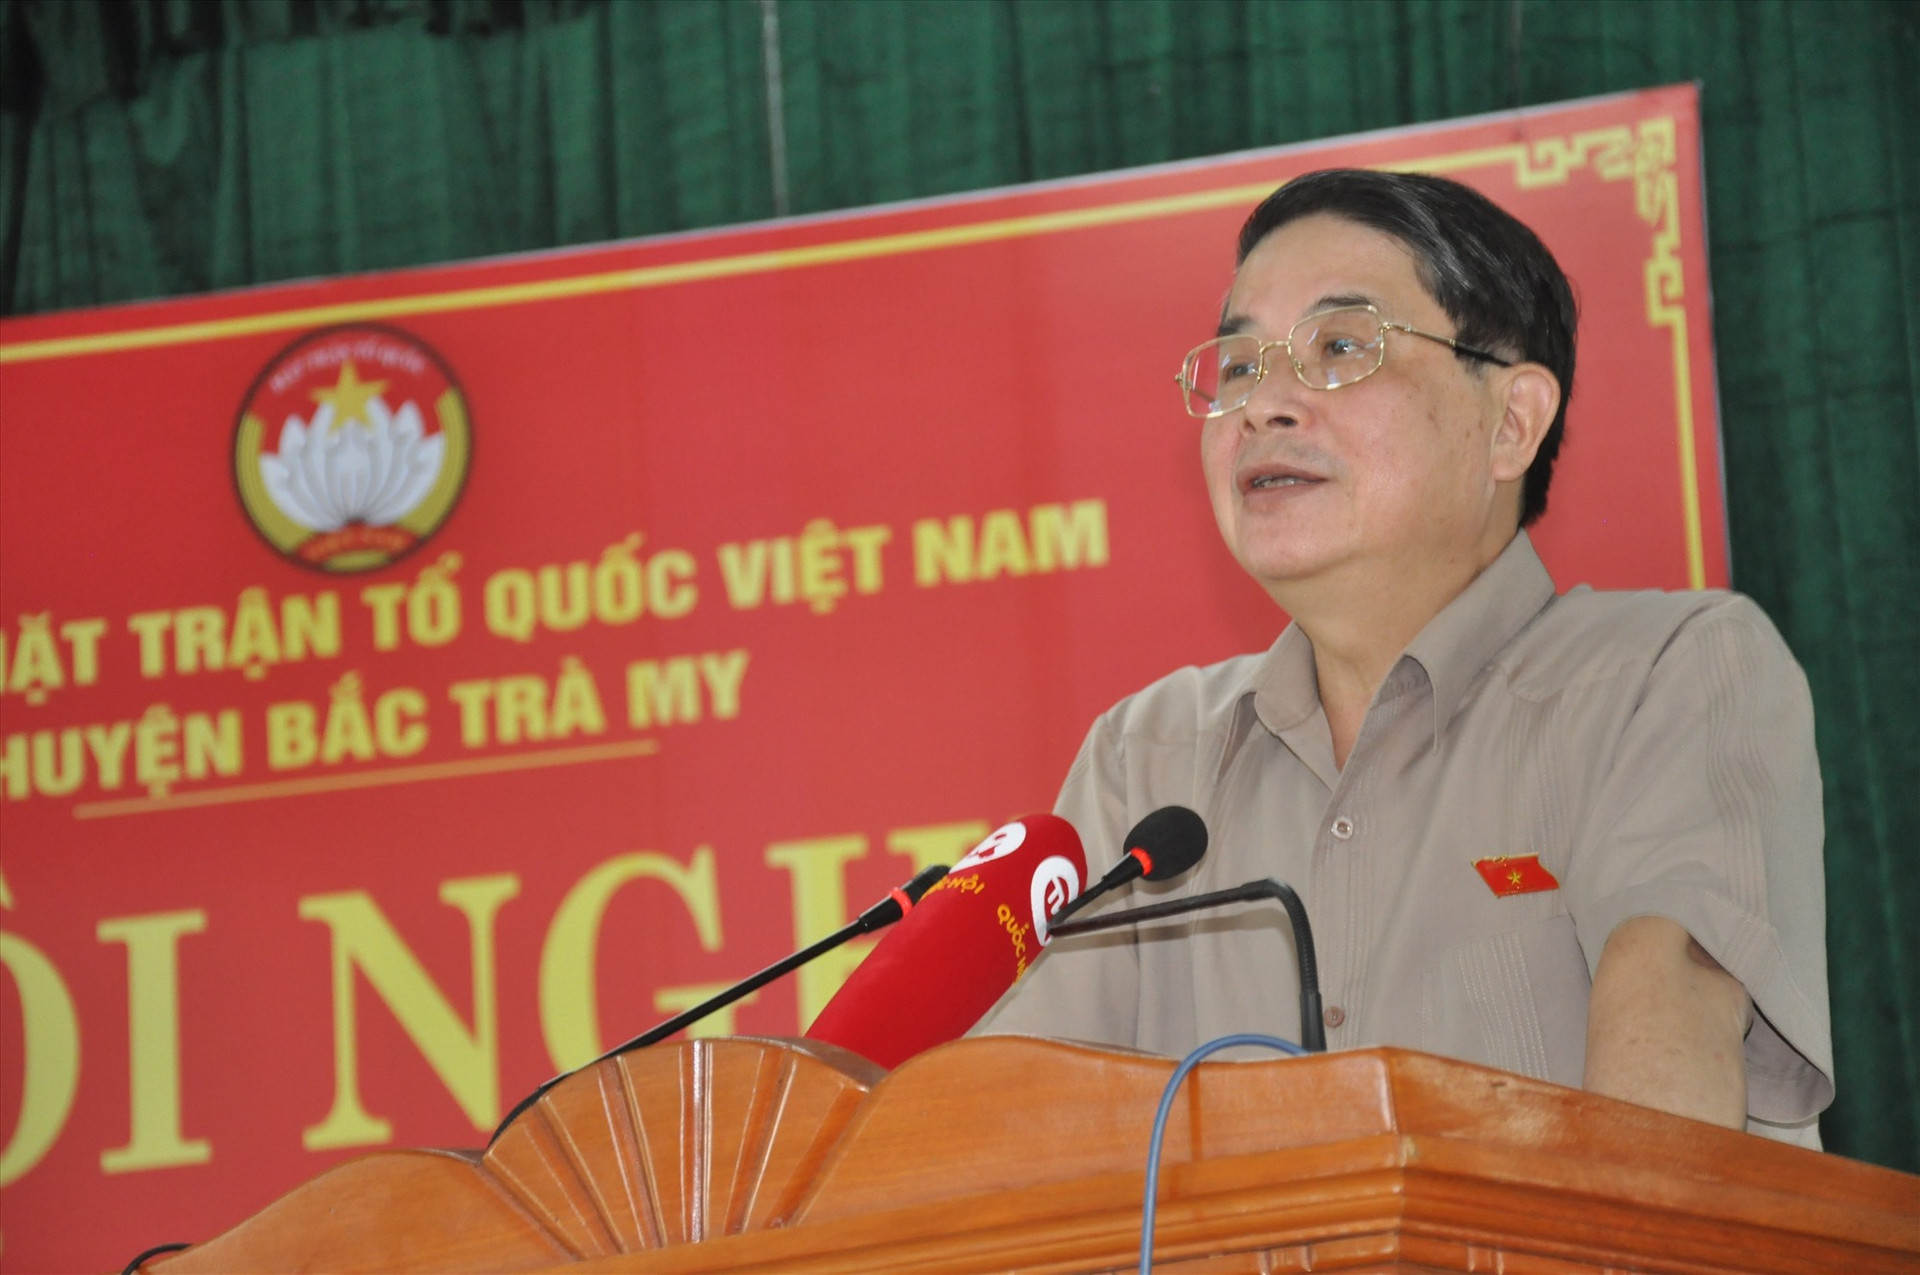 Phó Chủ tịch Quốc hội Nguyễn Đức Hải trao đổi với cử tri huyện Bắc Trà My. Ảnh: N.Đ